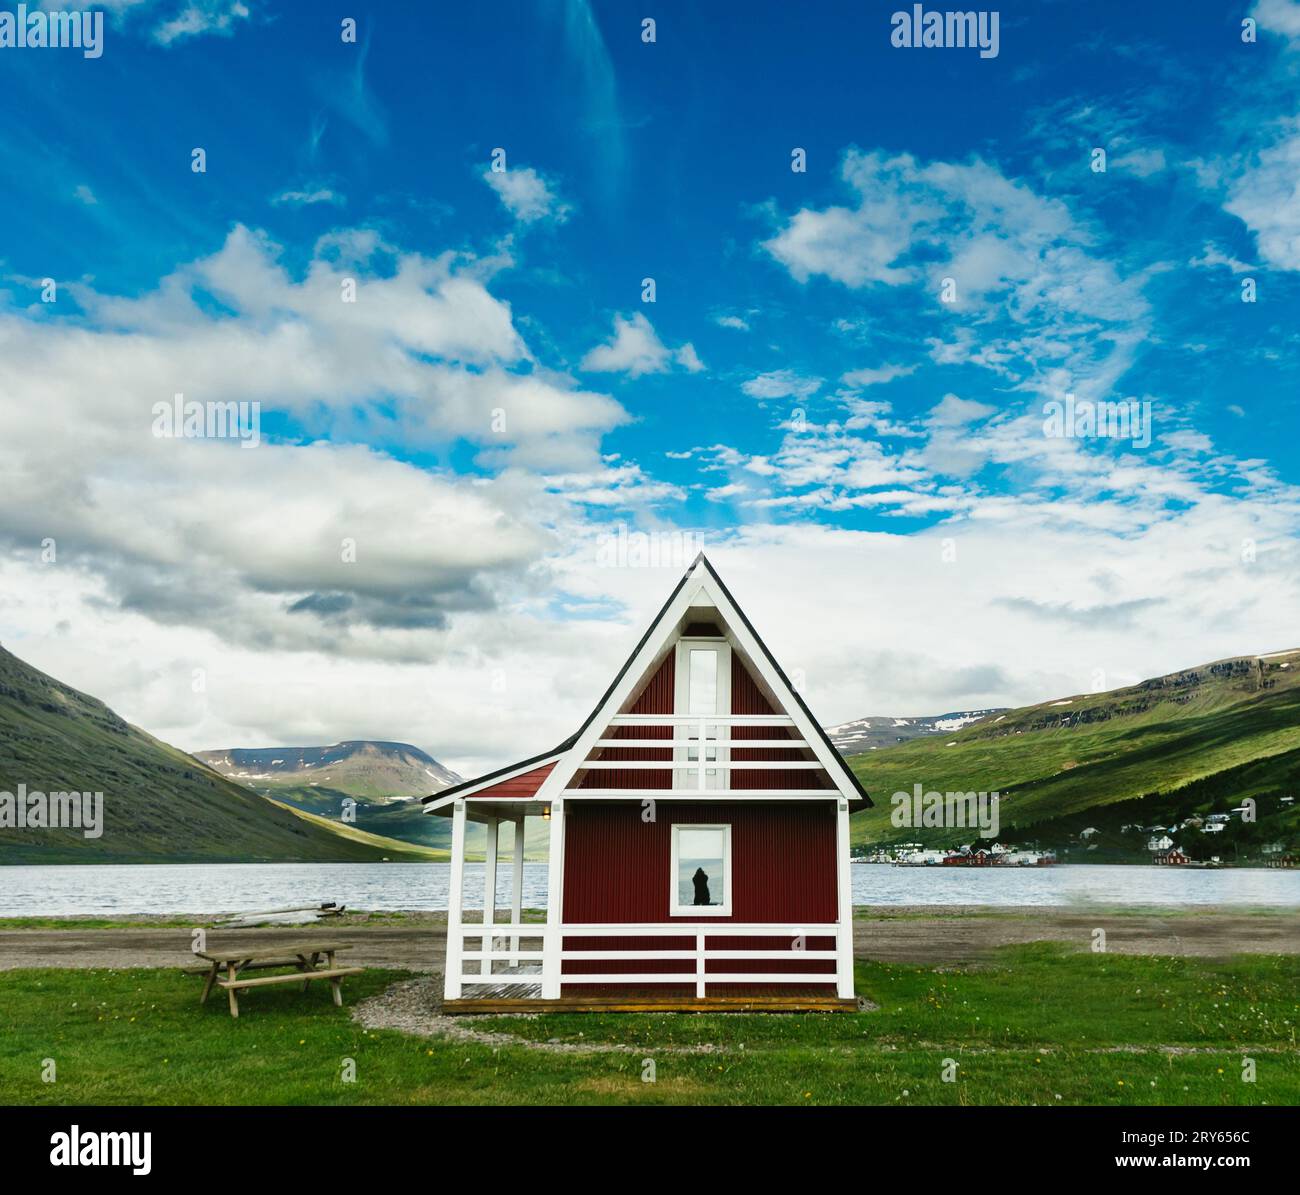 Bordo rosso della cabina del fiordo nella verde valle con riflesso blu delle donne del cielo Foto Stock